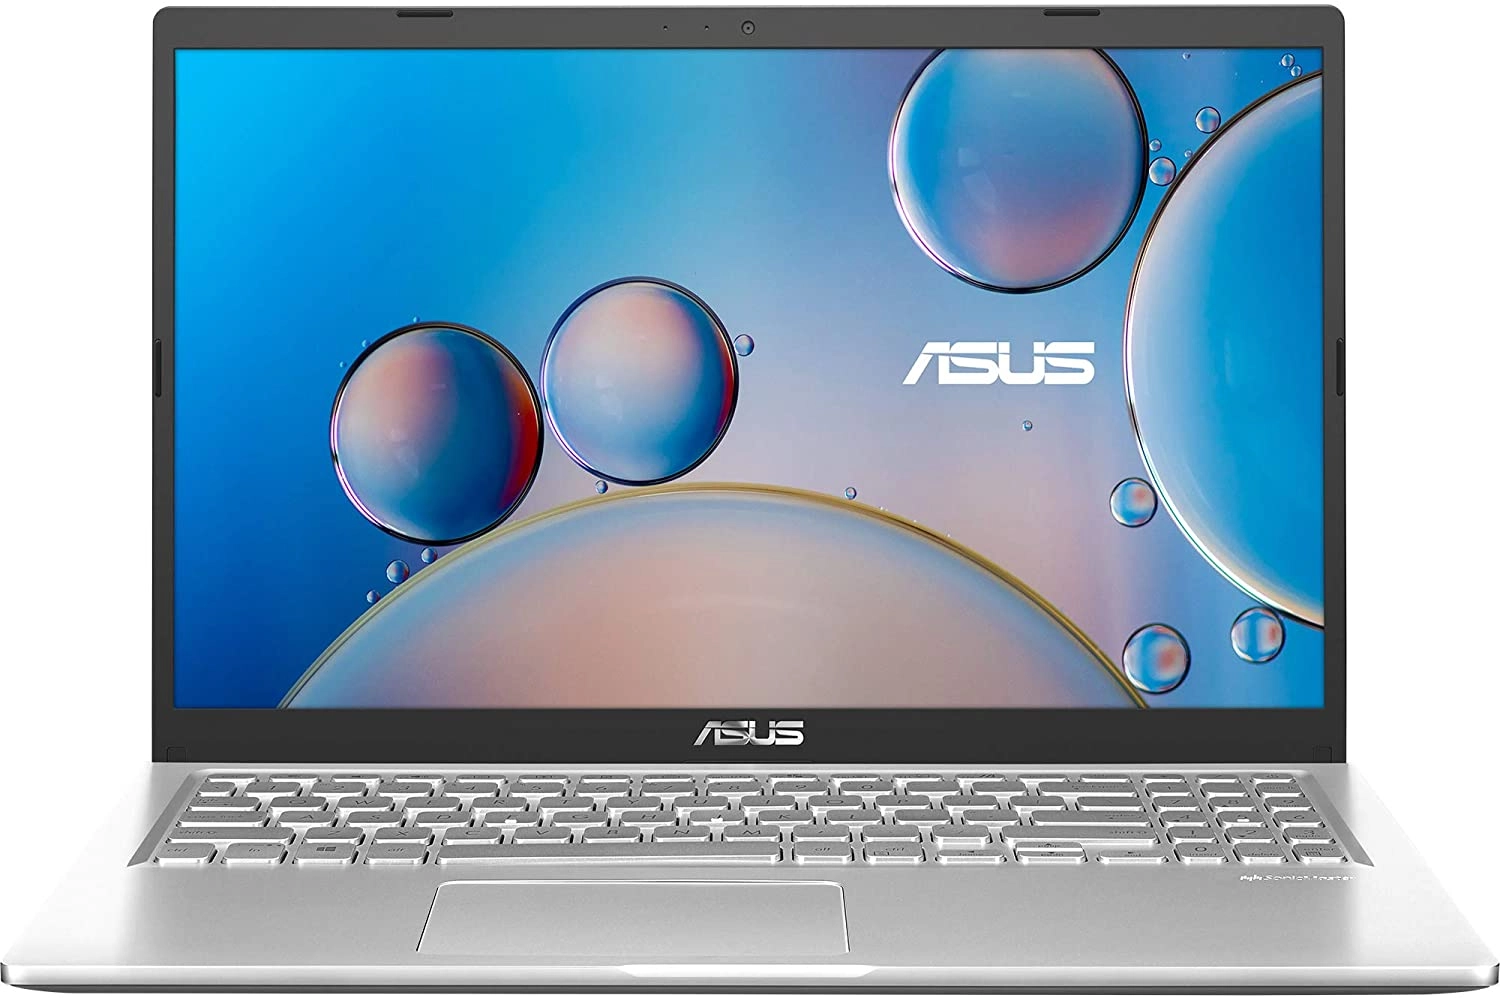 Asus D515DA-BR638 laptop image